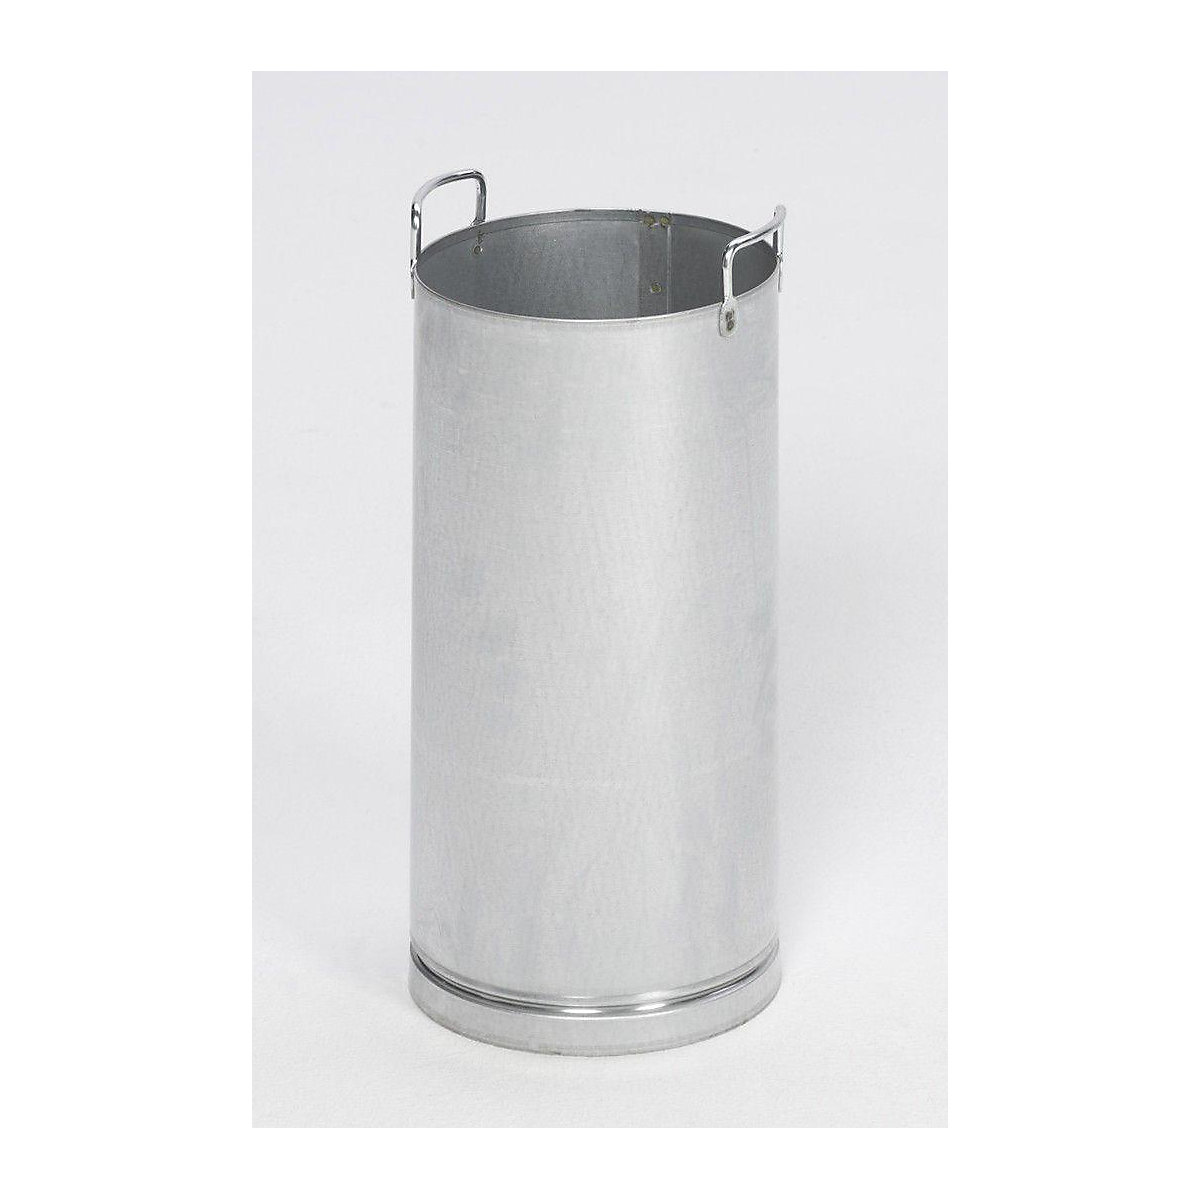 Inner bin for safety combination ashtray - VAR